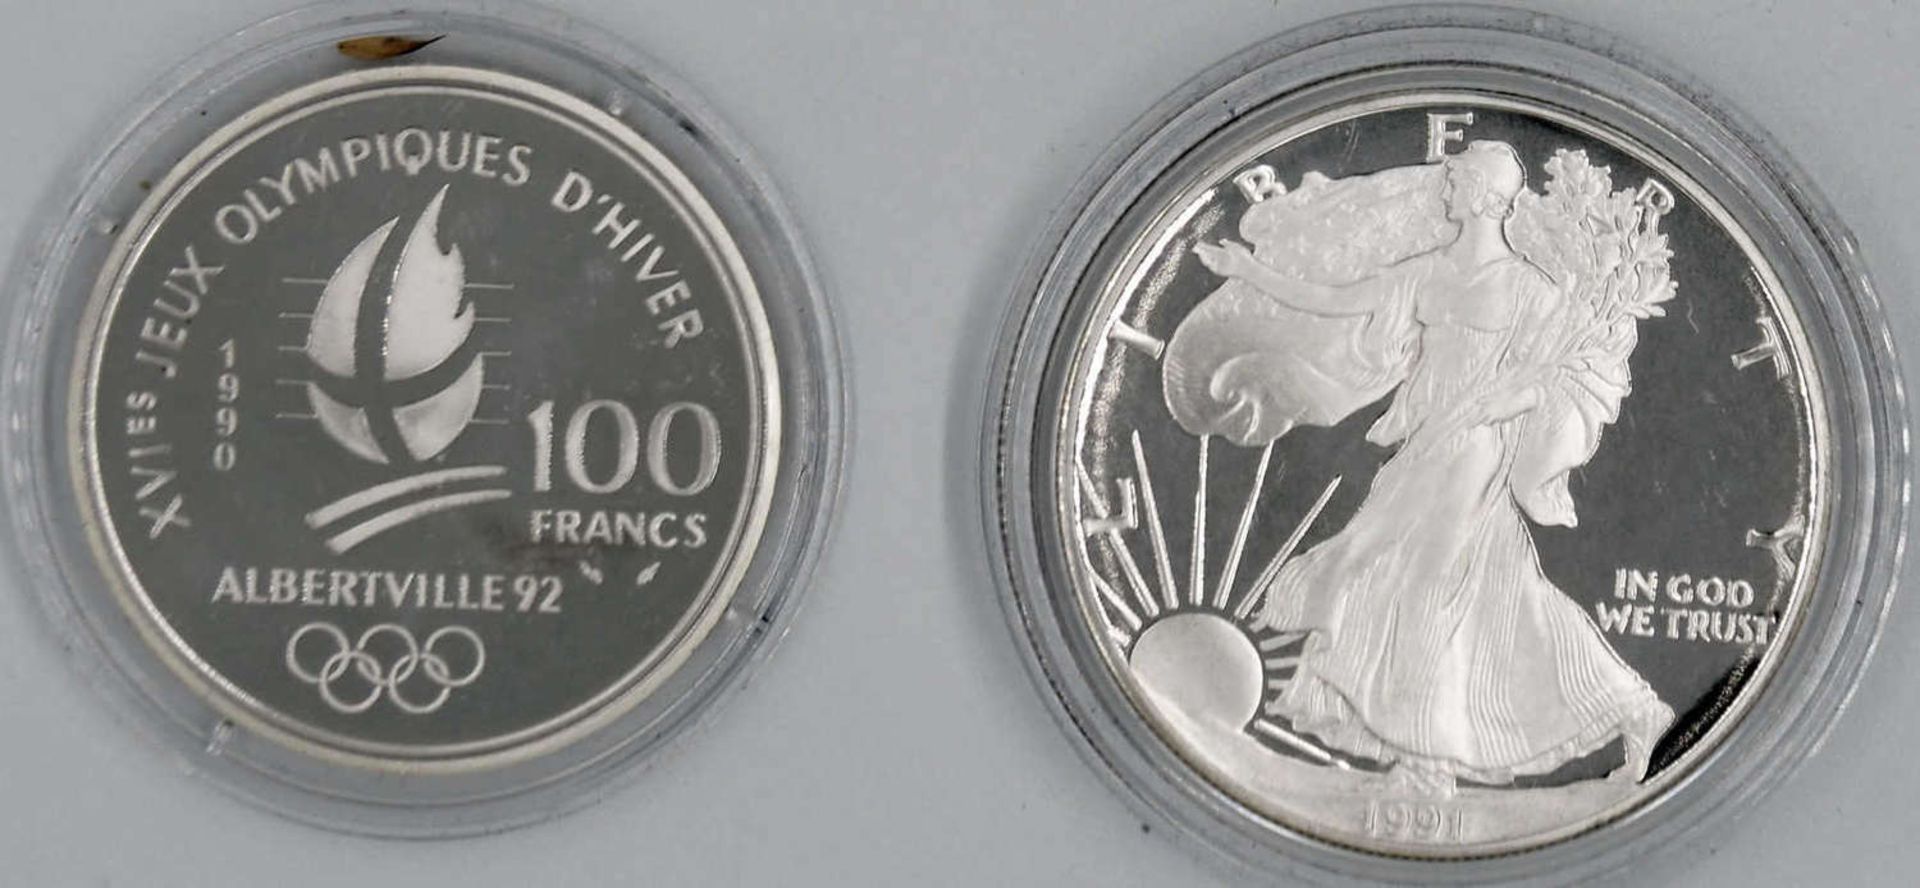 Zwei Silbermünzen: 1 x USA 1991 1 Dollar, 1 oz. Silber und 1 x Frankreich 1990 100 Francs "